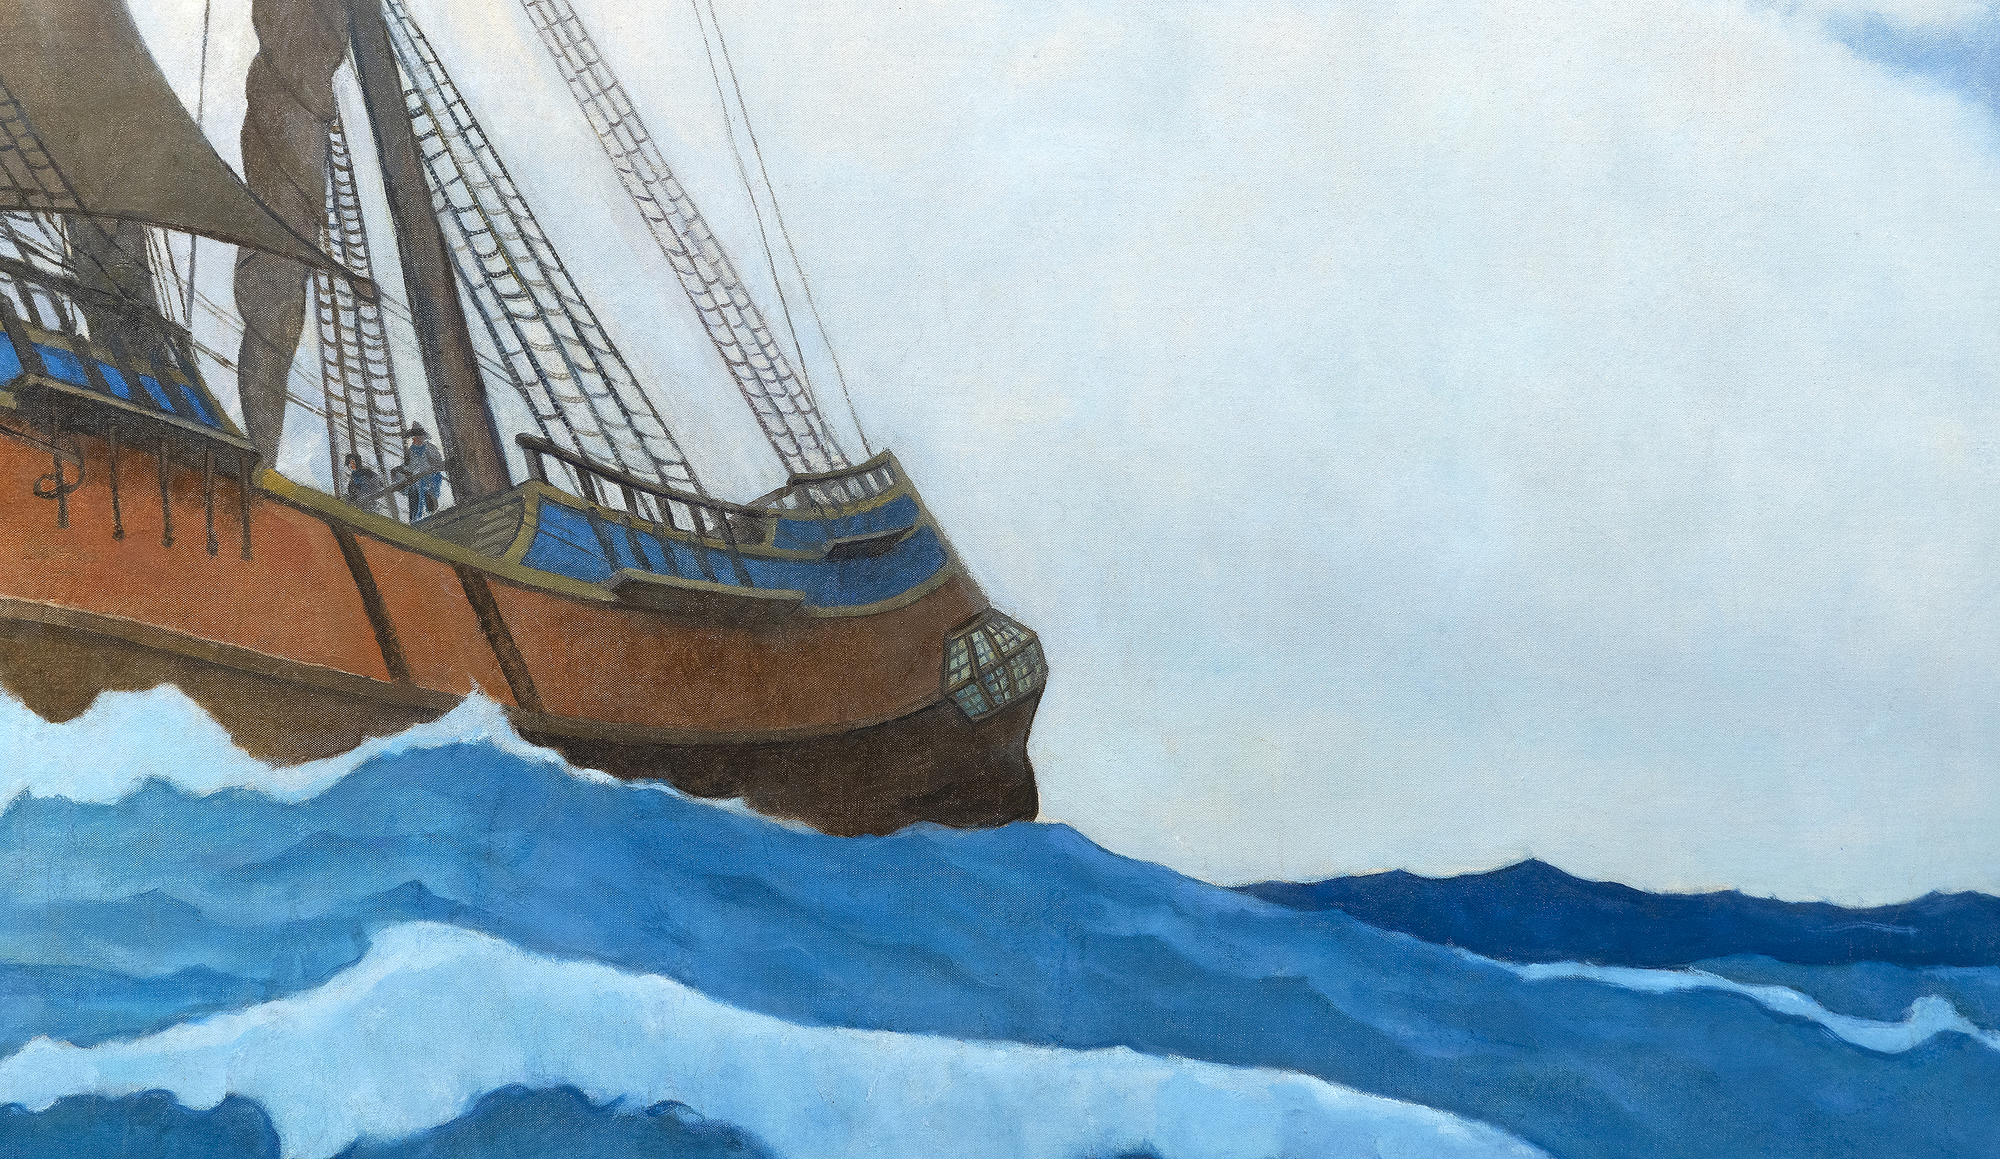 N.C. WYETH - Die Ankunft der Mayflower im Jahr 1620 - Öl auf Leinwand - 104 1/2 x 158 3/4 Zoll.